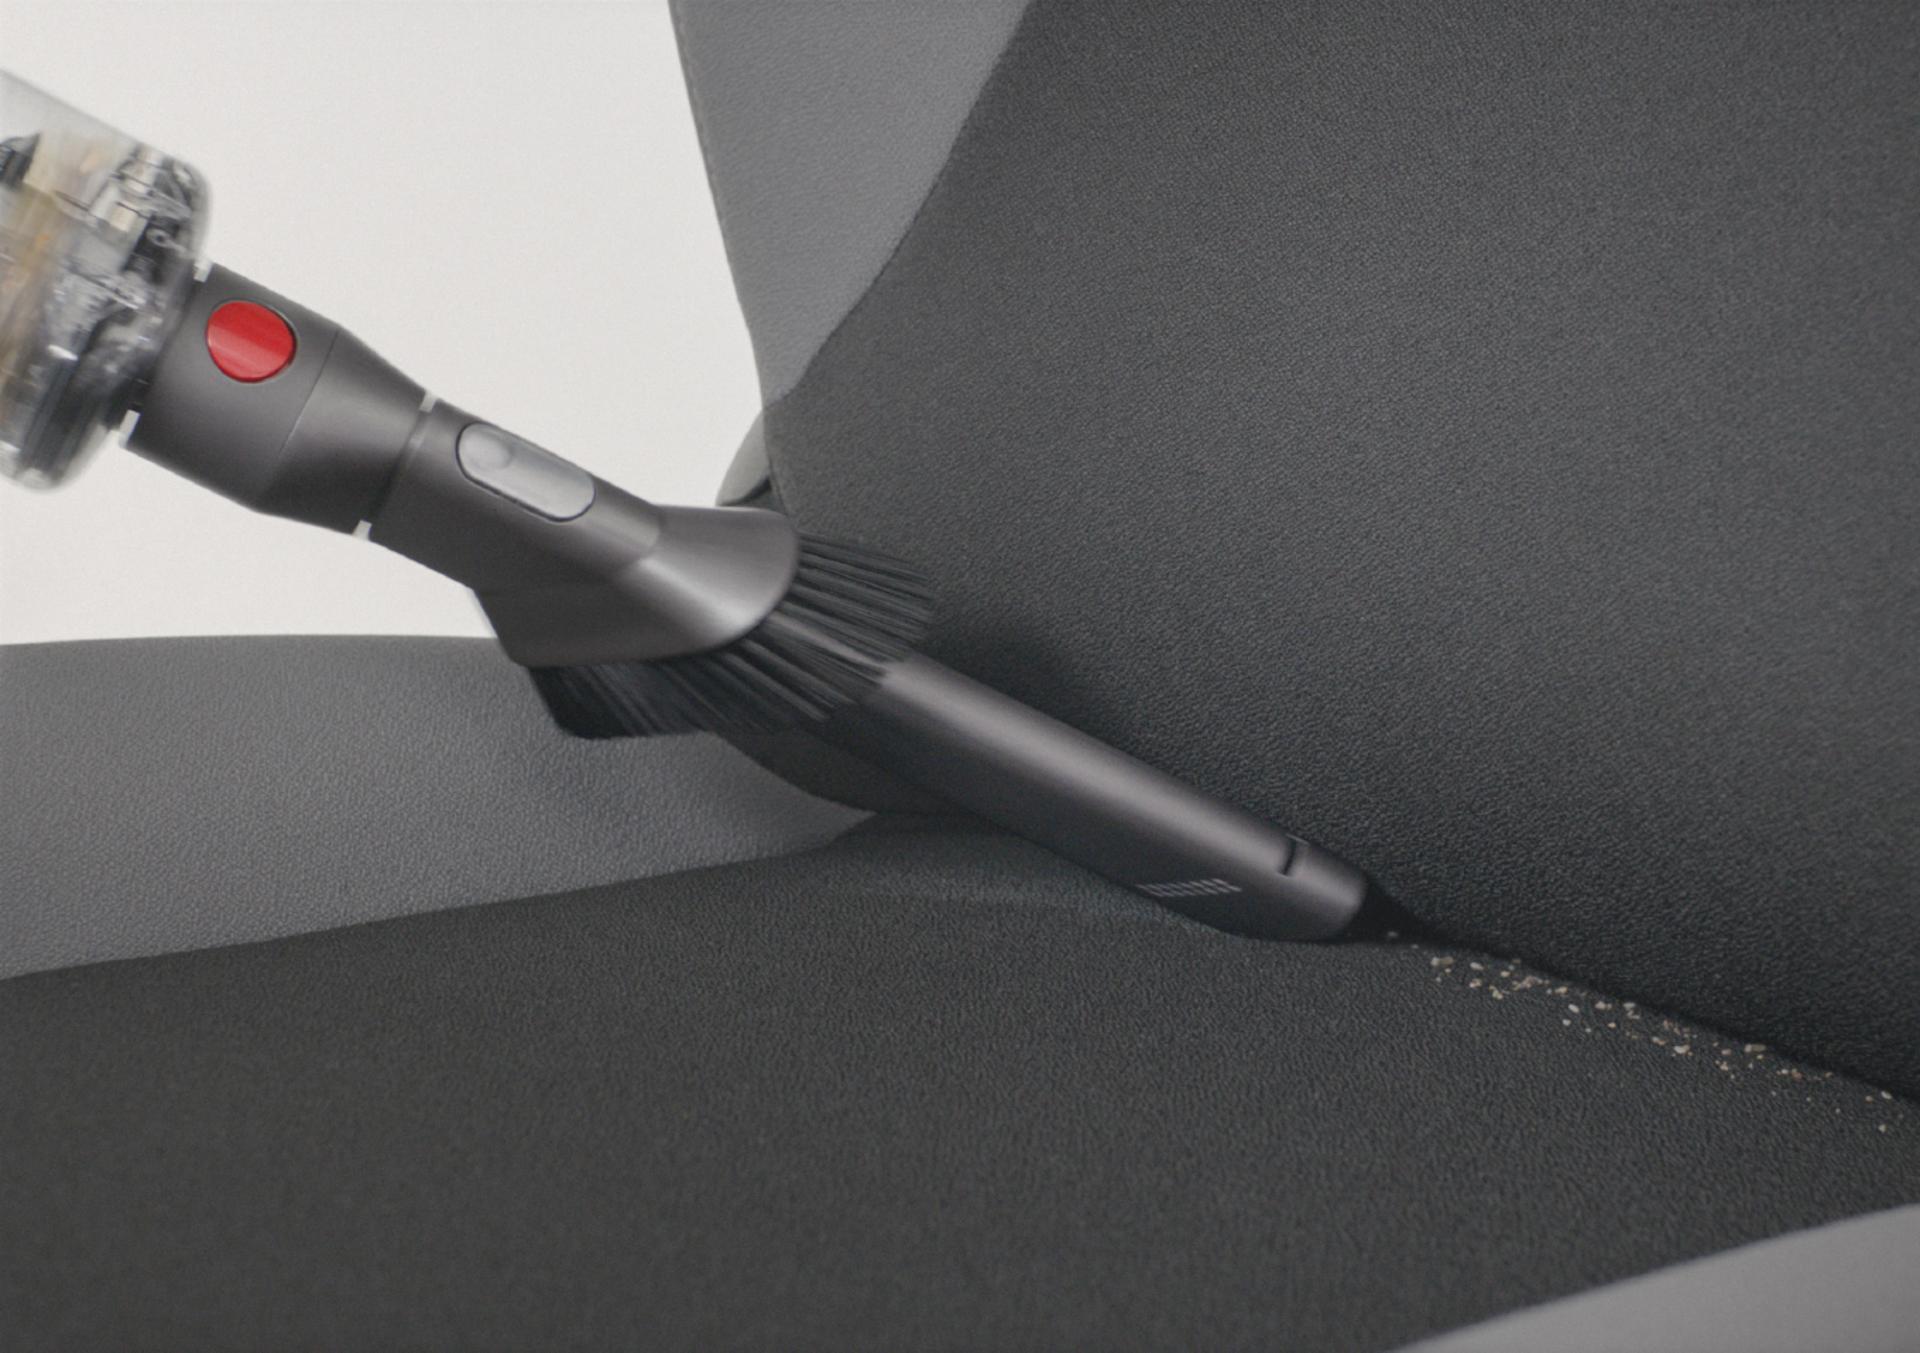 다이슨 옴니-글라이드™ 무선 청소기를 핸디 모드 전환해 자동차 시트를 청소하는 모습.